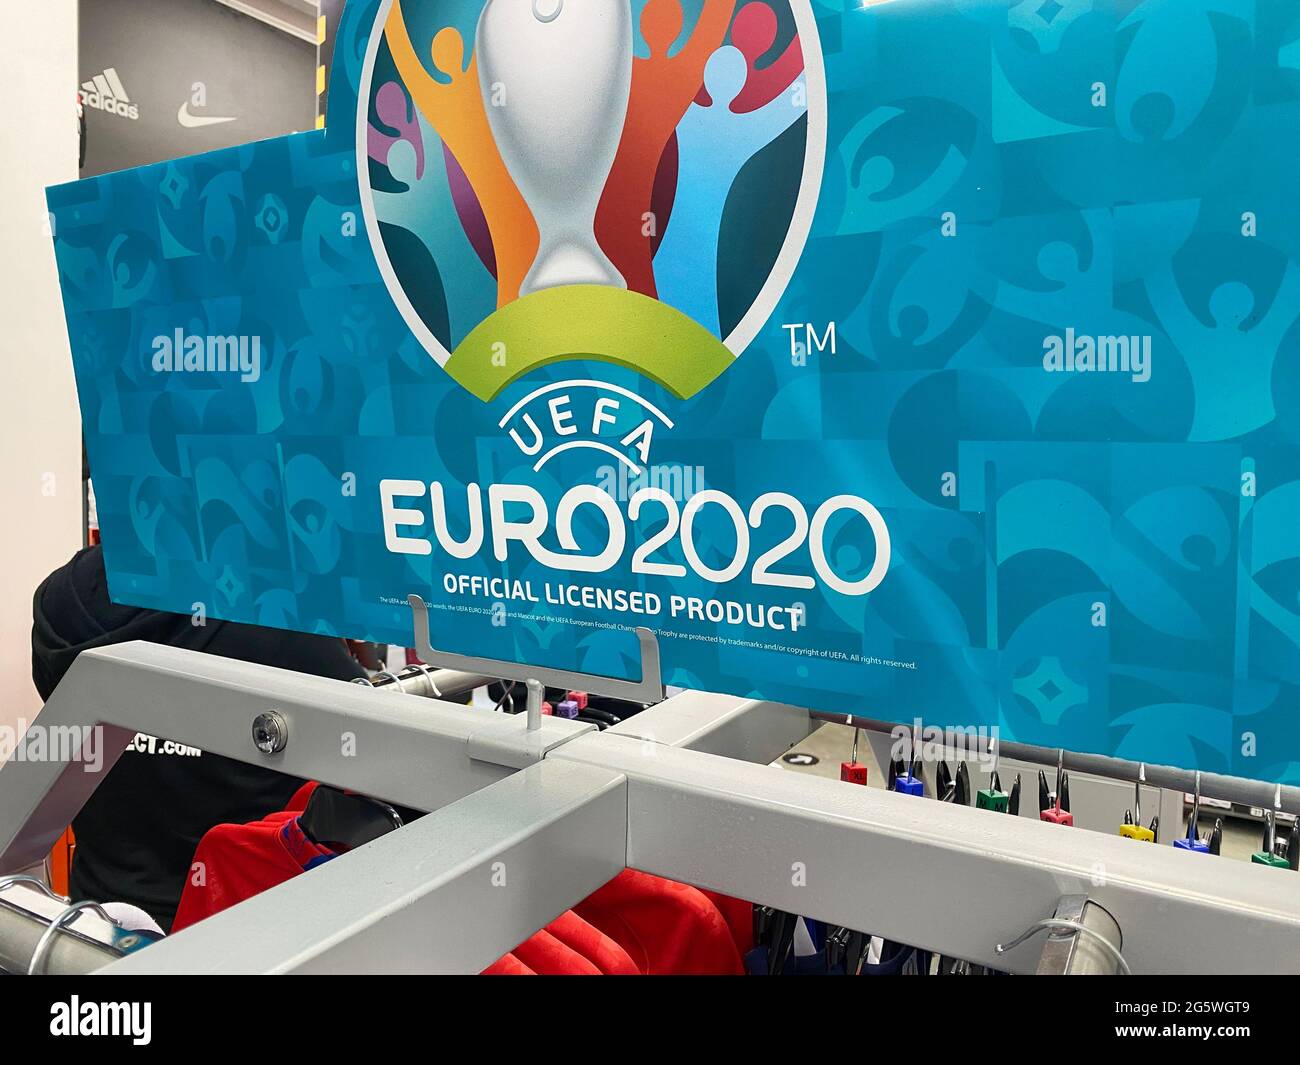 LONDRA, UK - Giugno 2021: Logo per la UEFA euro 2020 in un negozio di articoli sportivi Foto Stock